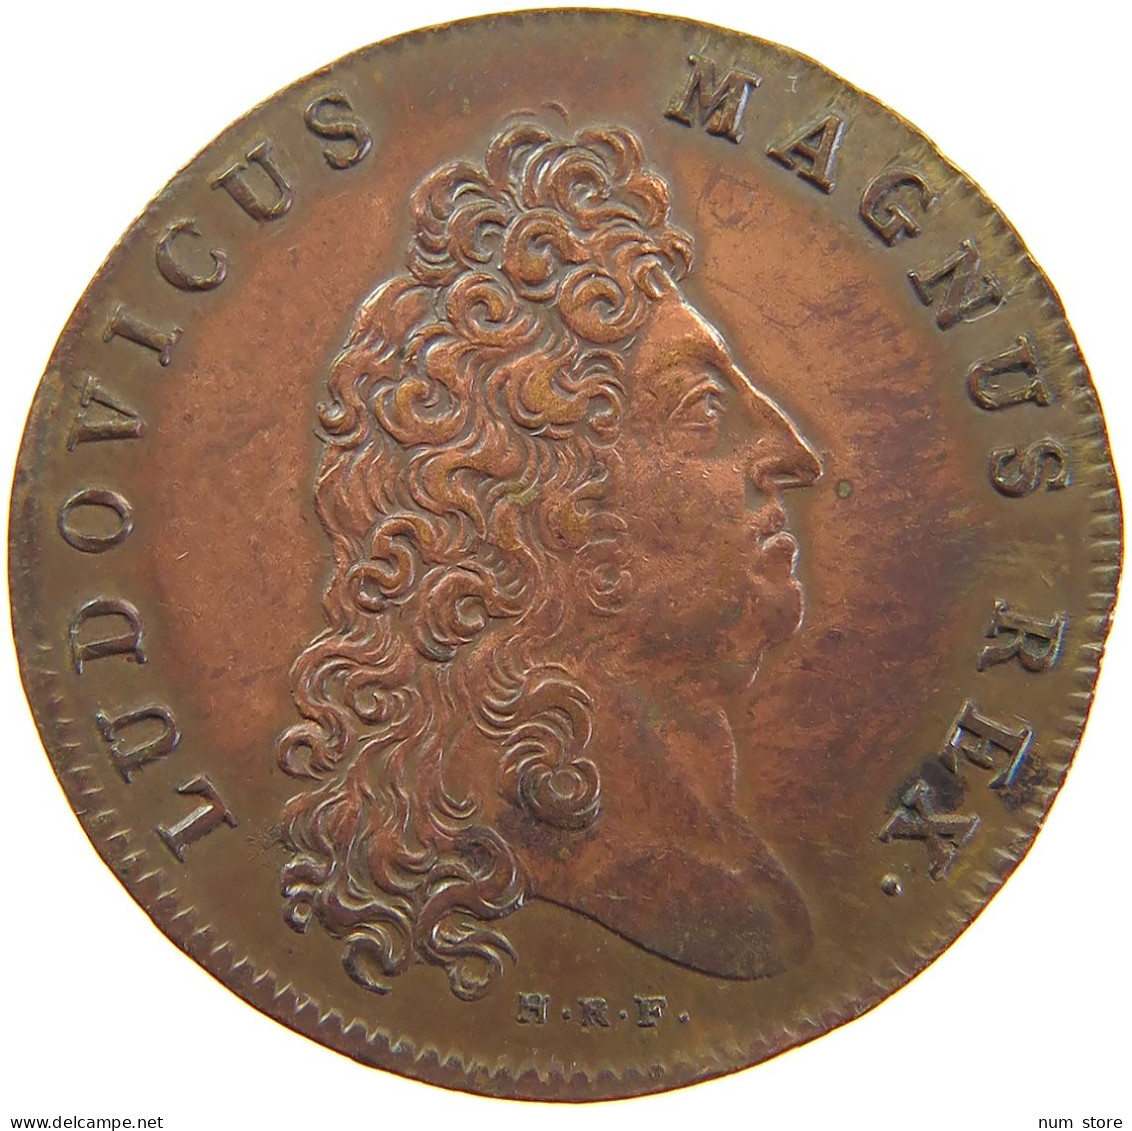 FRANCE MEDAILLE 1700 Louis XIV. (1643–1715) CHAMBRE AUX DENIERS CHAMBRE AUX DENIERS 1700 #sm05 1025 - Royaux / De Noblesse